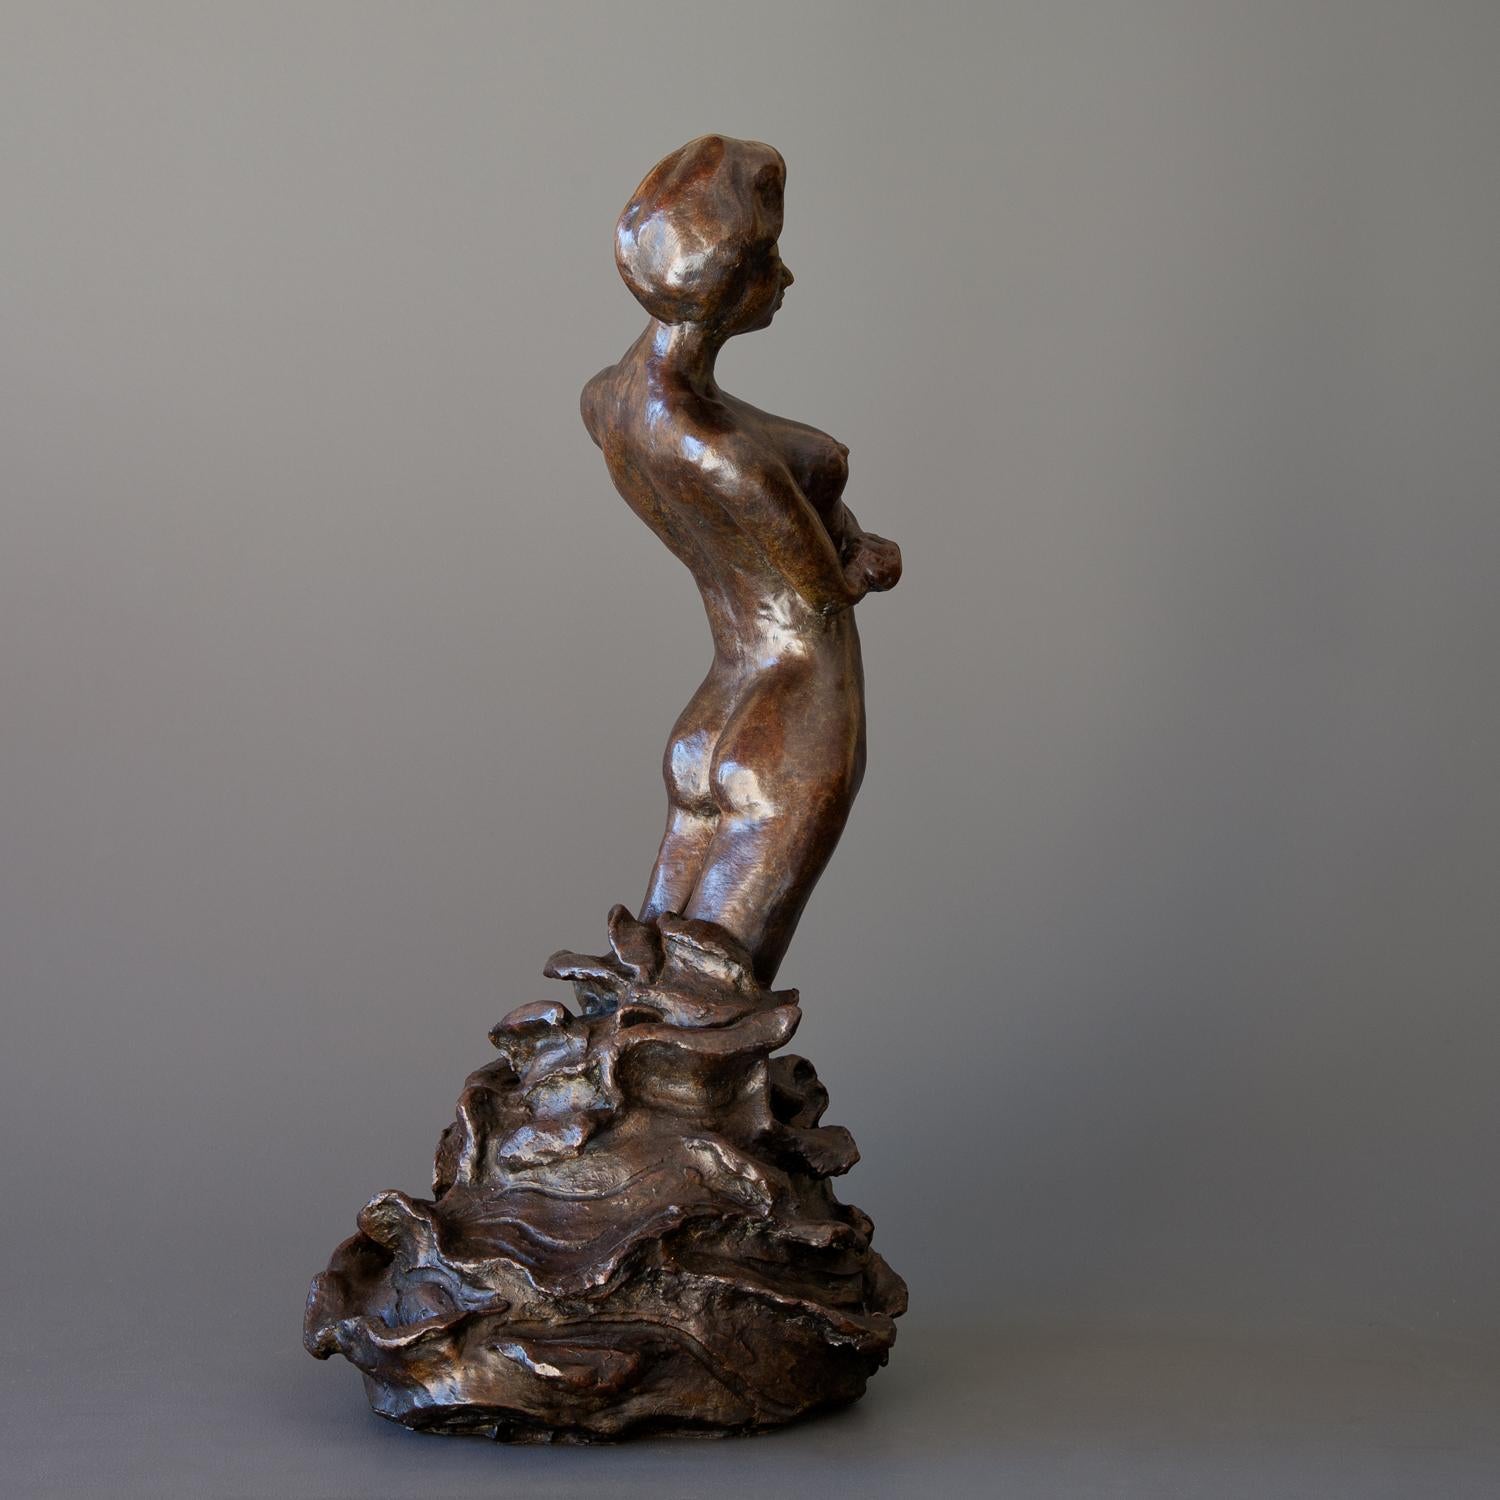 Lady in Water - Sculpture by Lydia Da Silva